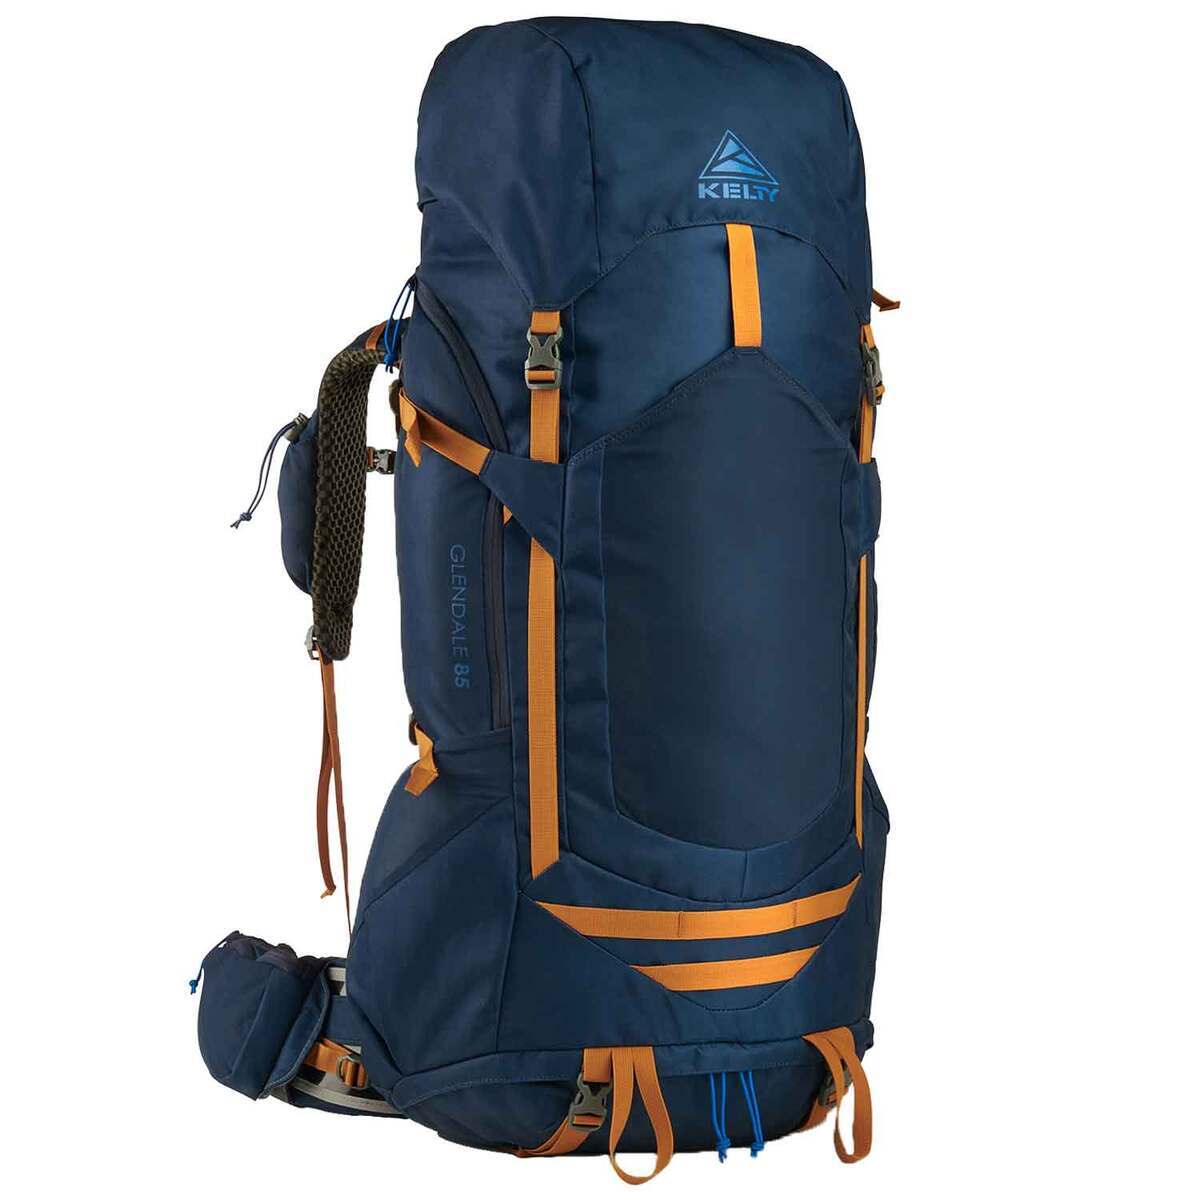 https://www.sportsmans.com/medias/kelty-glendale-85-liter-backpacking-pack-paget-bluecathay-spice-1775887-1.jpg?context=bWFzdGVyfGltYWdlc3w2Mjc3NHxpbWFnZS9qcGVnfGgzNS9oMTkvMTEyMzgxNTIyMDg0MTQvMTIwMC1jb252ZXJzaW9uRm9ybWF0X2Jhc2UtY29udmVyc2lvbkZvcm1hdF9zbXctMTc3NTg4Ny0xLmpwZ3xlM2M1YjA1MzI3OWMwNDg5YzIxM2JjOTQxYWYxNjA2ZDg2NGFmMzVhZjI2YWJlZjk3YWE4YTI5OGQ5OGRjYzk2